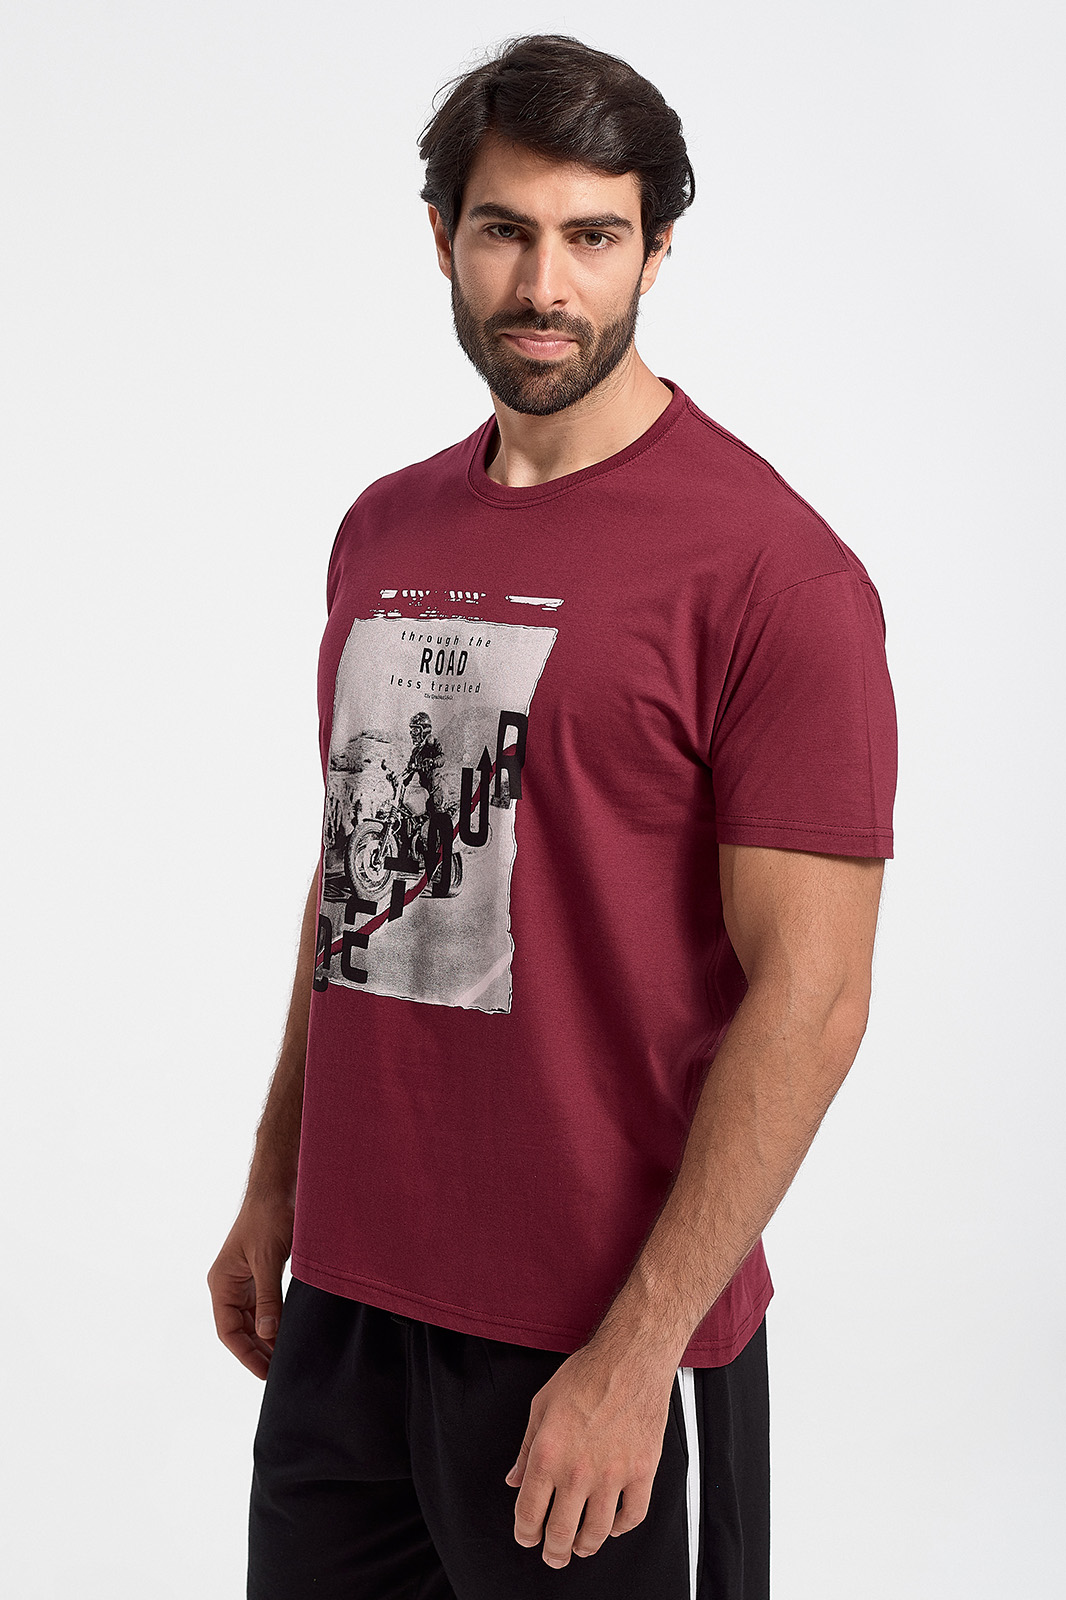 JHK Herren-T-Shirt ROAD burgunderrot